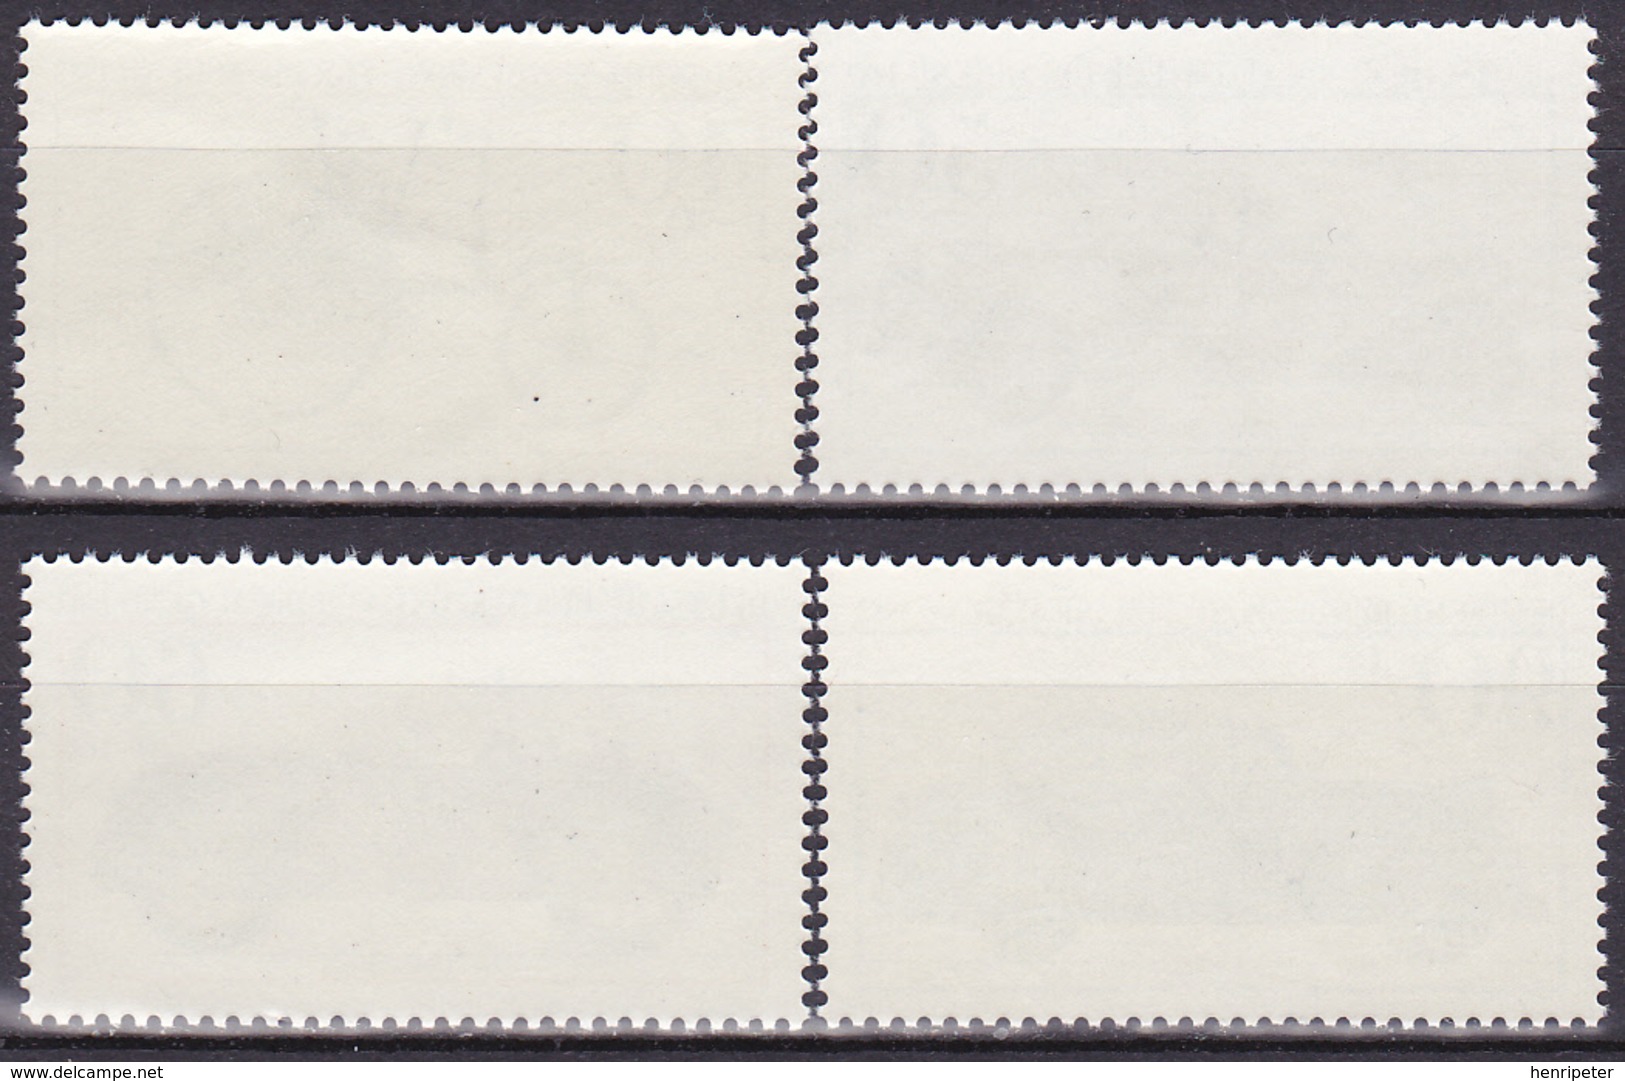 Série De 4 T.-P. Gommés Surtaxés Neufs** - Véhicules Historiques Musée De Munich - N° 955-956-957-958 (Yvert) - RFA 1982 - Unused Stamps